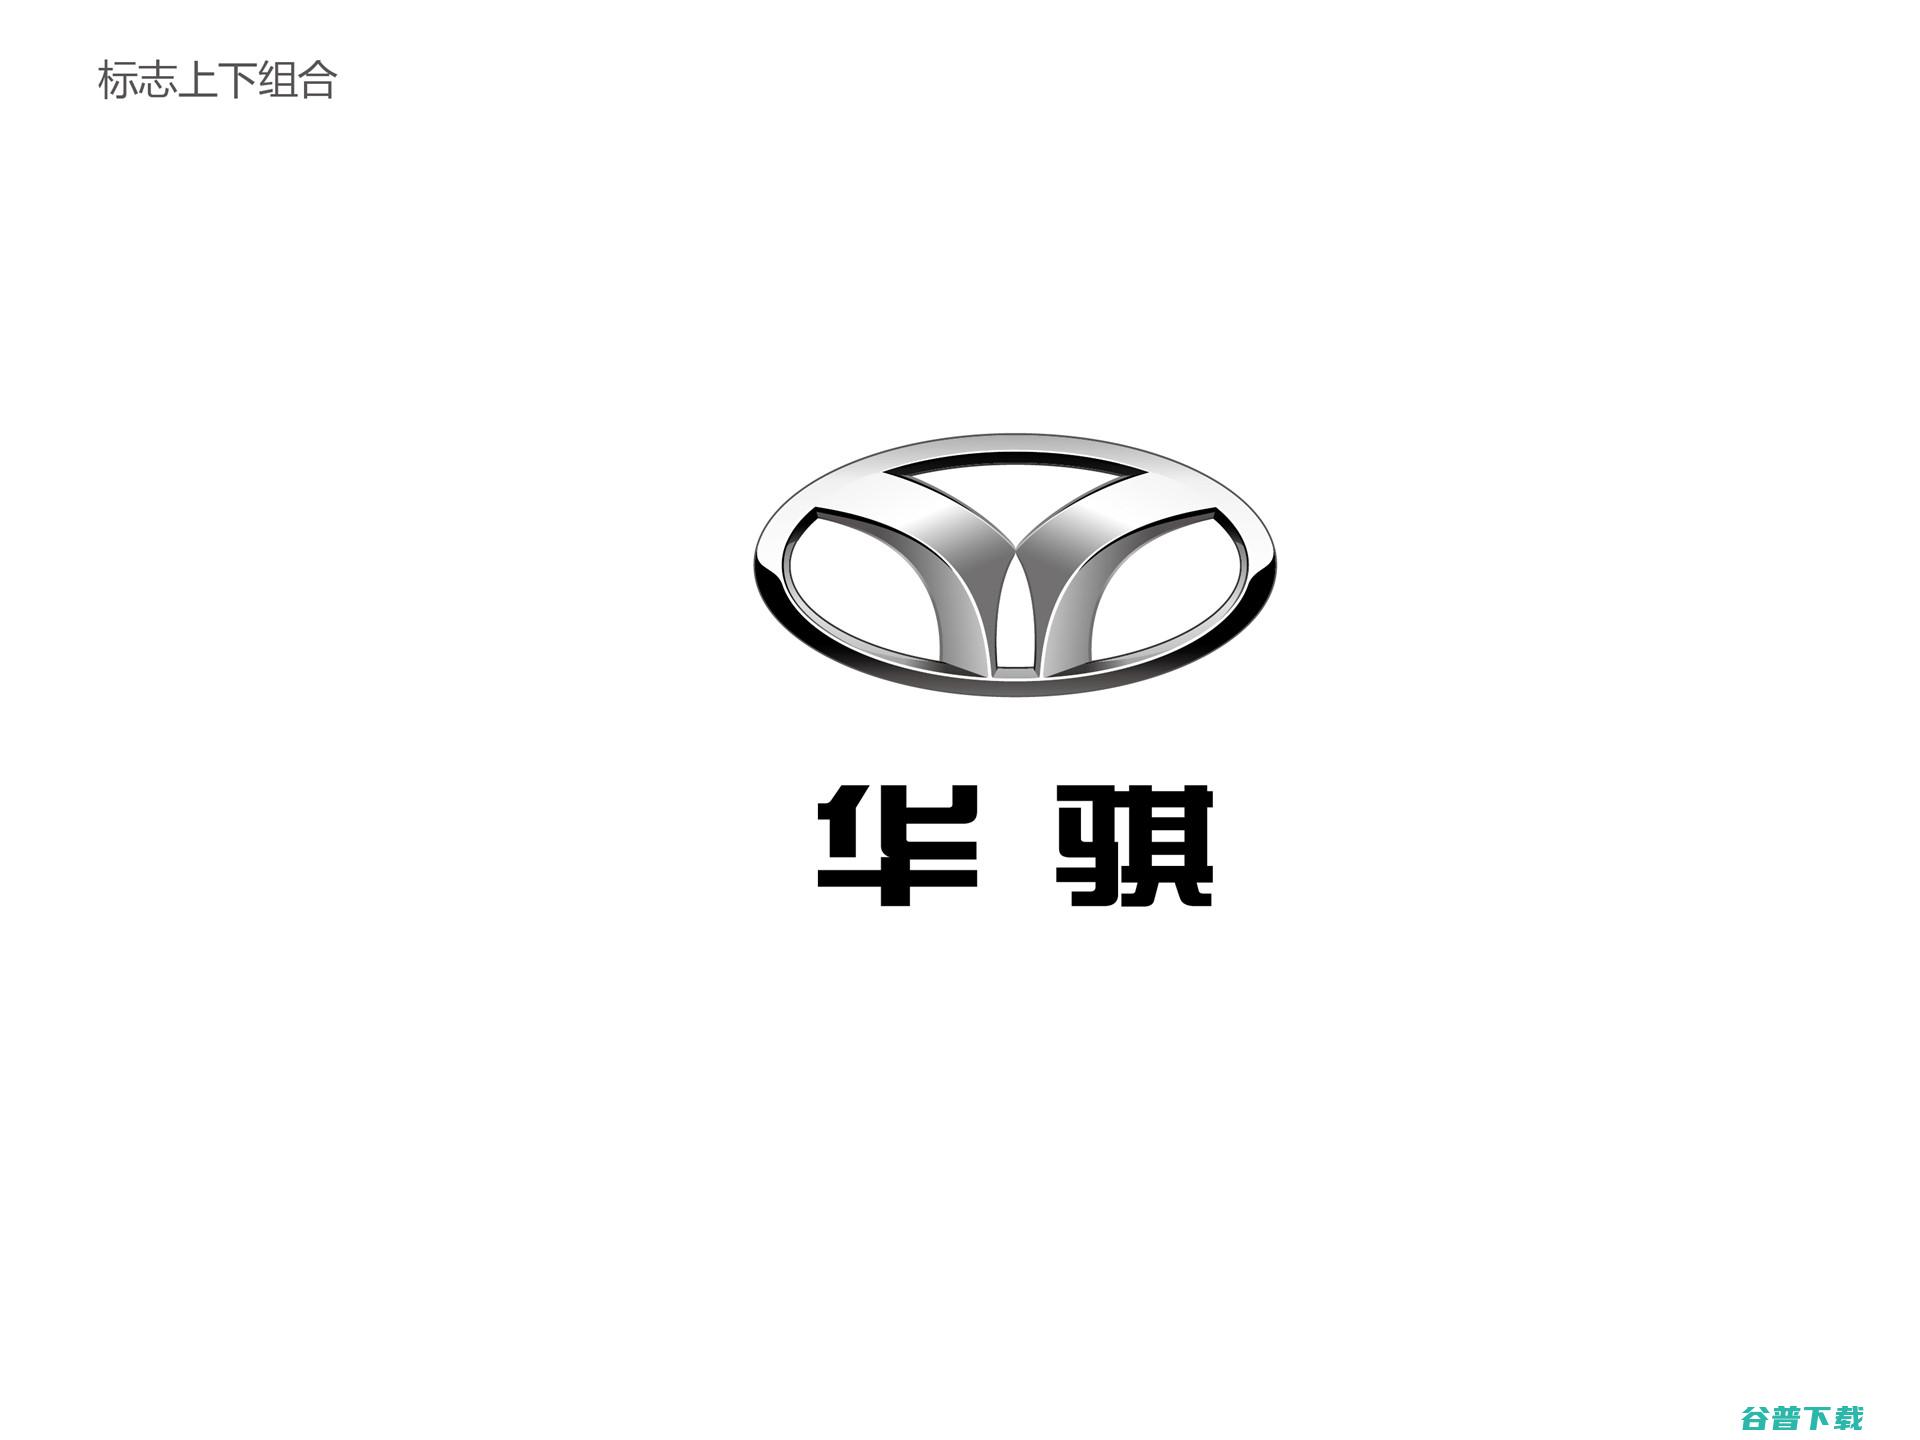 Horki轿车基于西风悦达起亚在中国消费的最新一代起亚Cerato